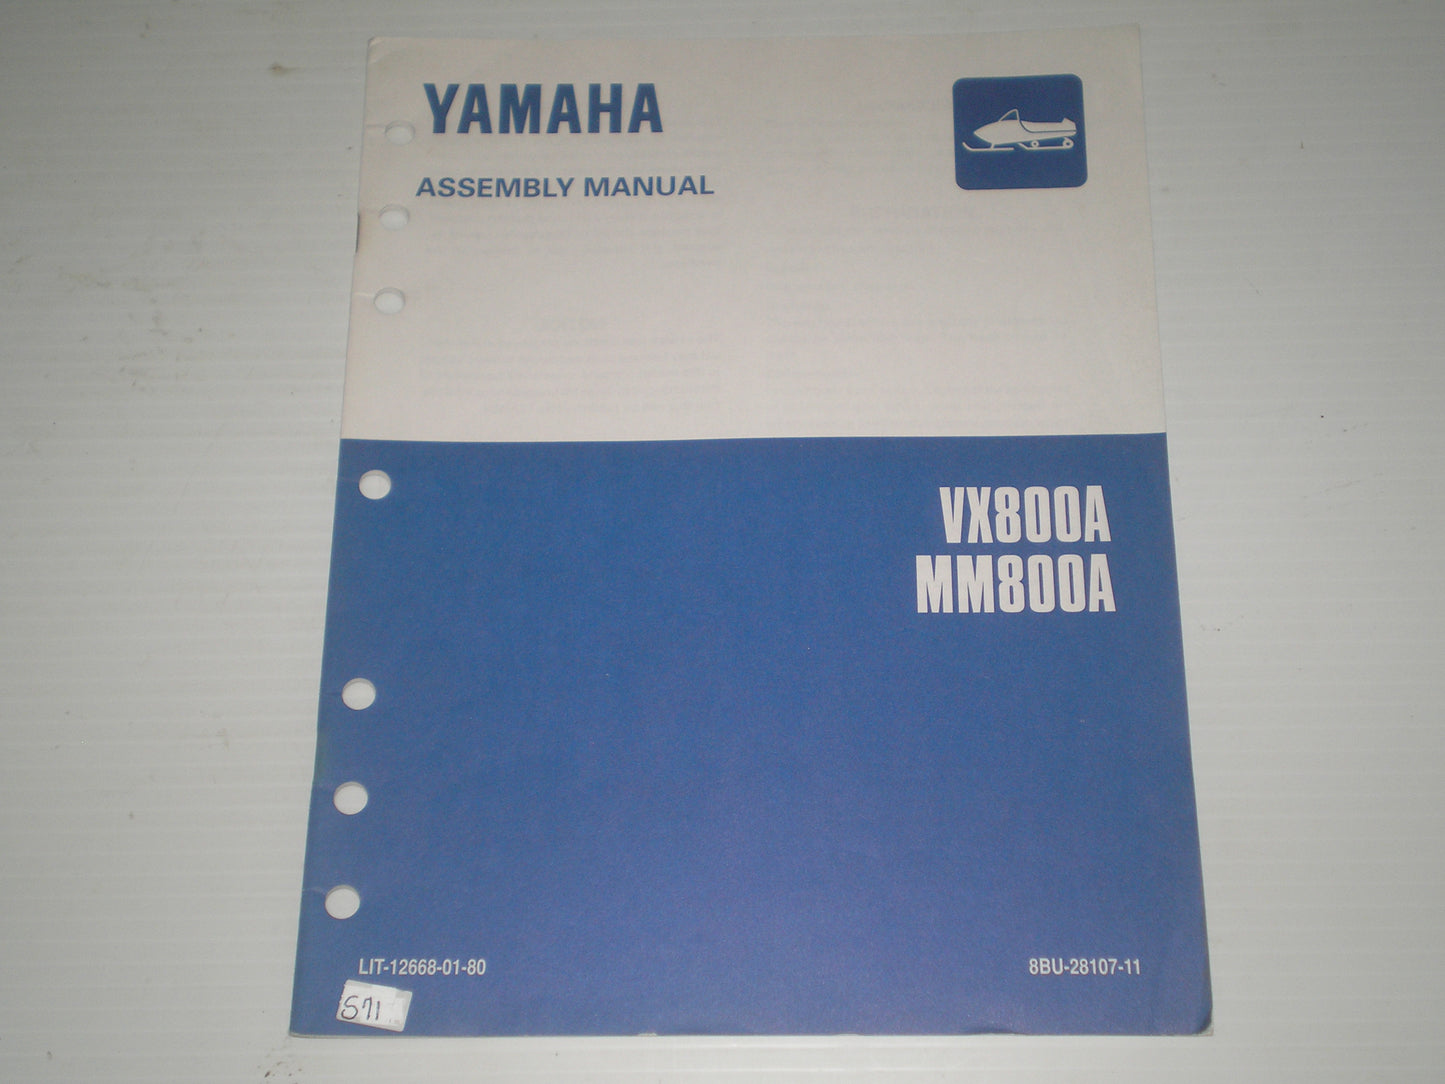 YAMAHA VX800 A  MM800 A  1997  Assembly Manual  8BU-28107-11  LIT-12668-01-80  #S71